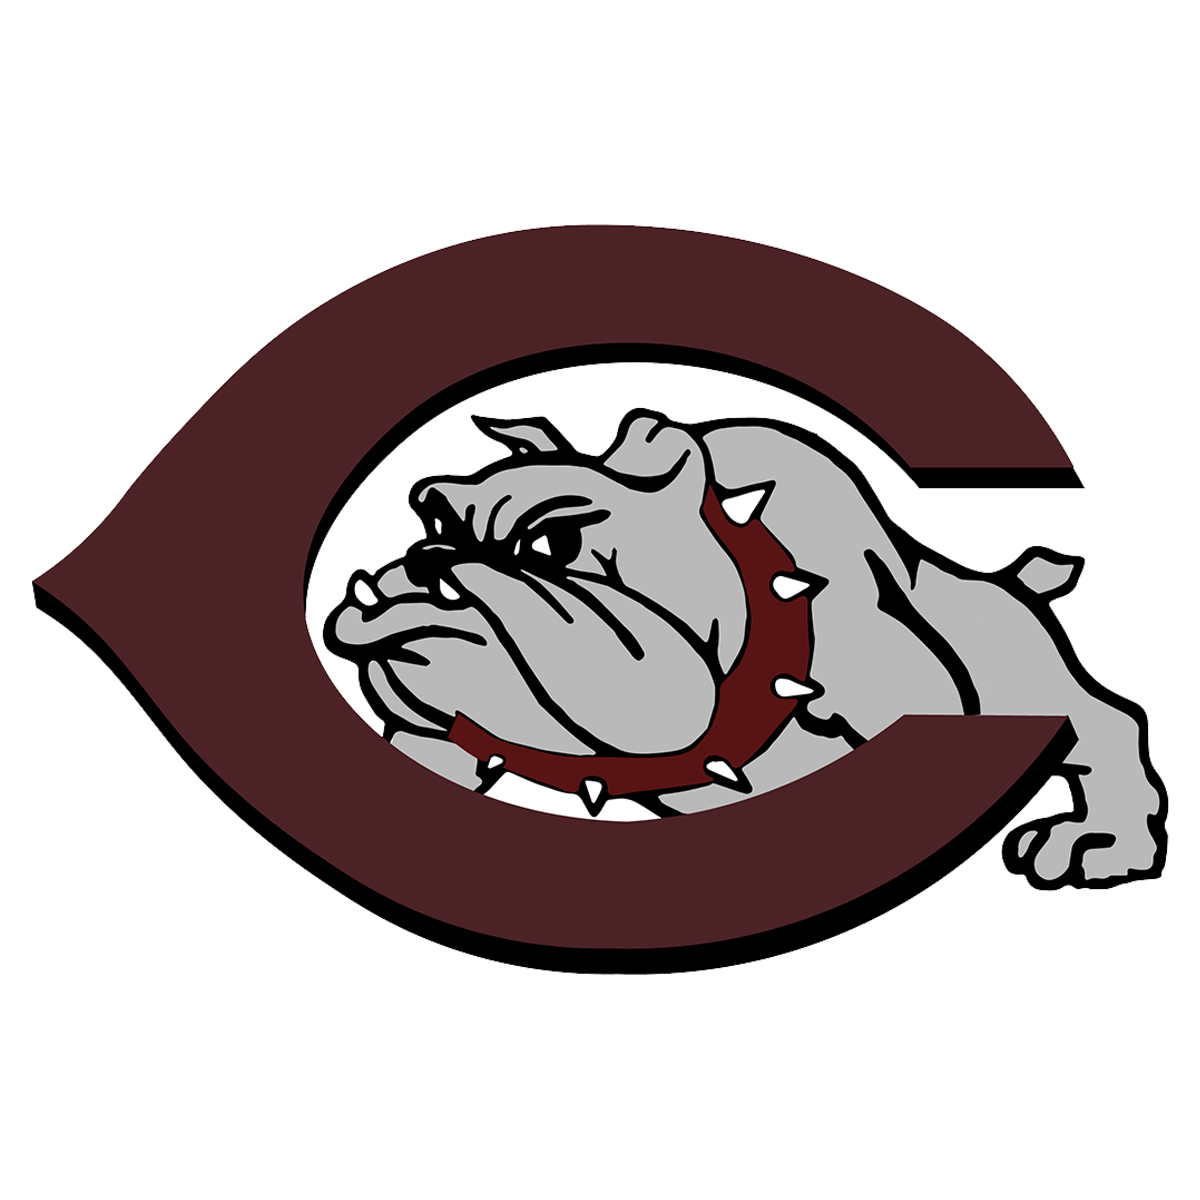 NCHS bulldog logo, a c with a doggy growling through it